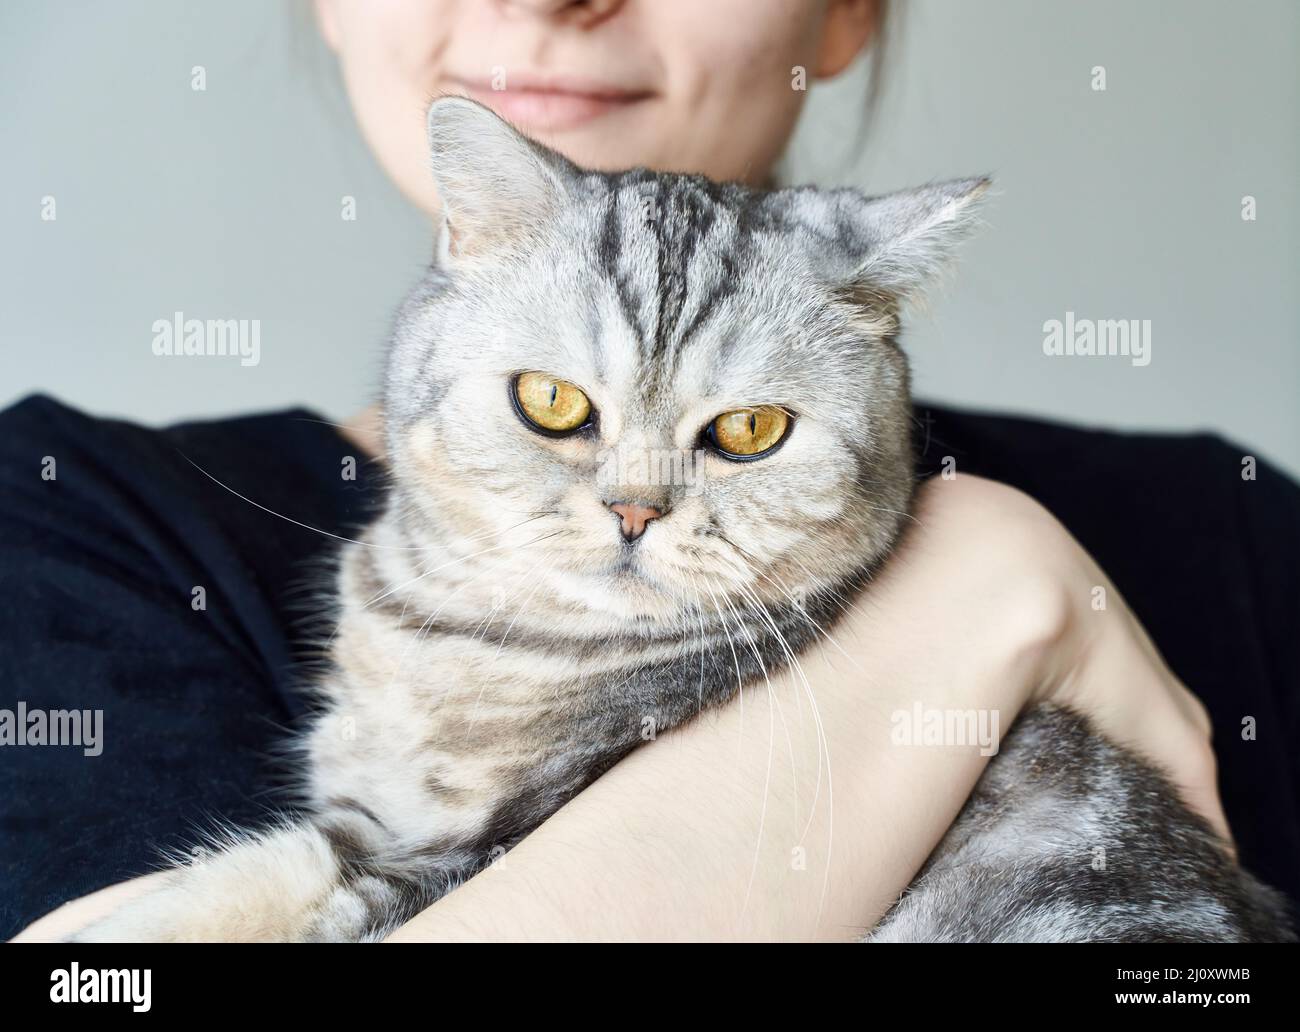 Cute gatto tabby in armi di donna irriconoscibile, l'amicizia tra gli esseri umani e animali domestici Foto Stock